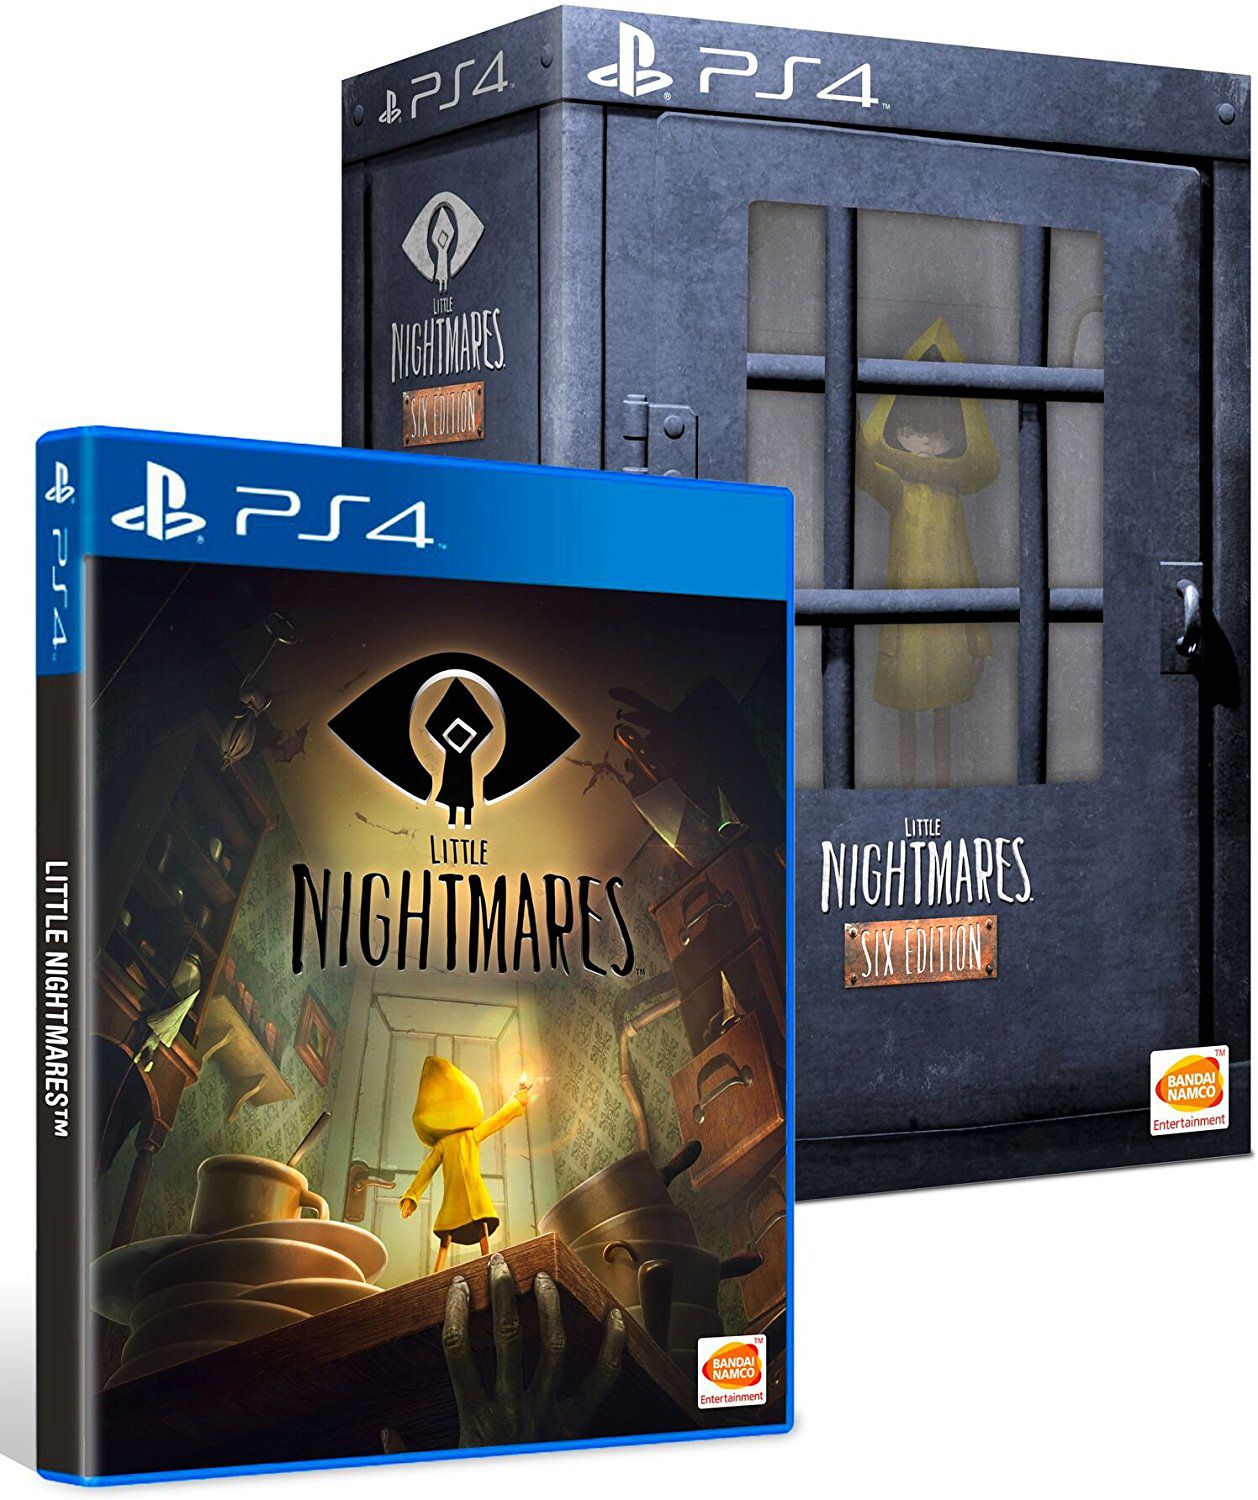 Little Nightmares II - Jogos de PS4